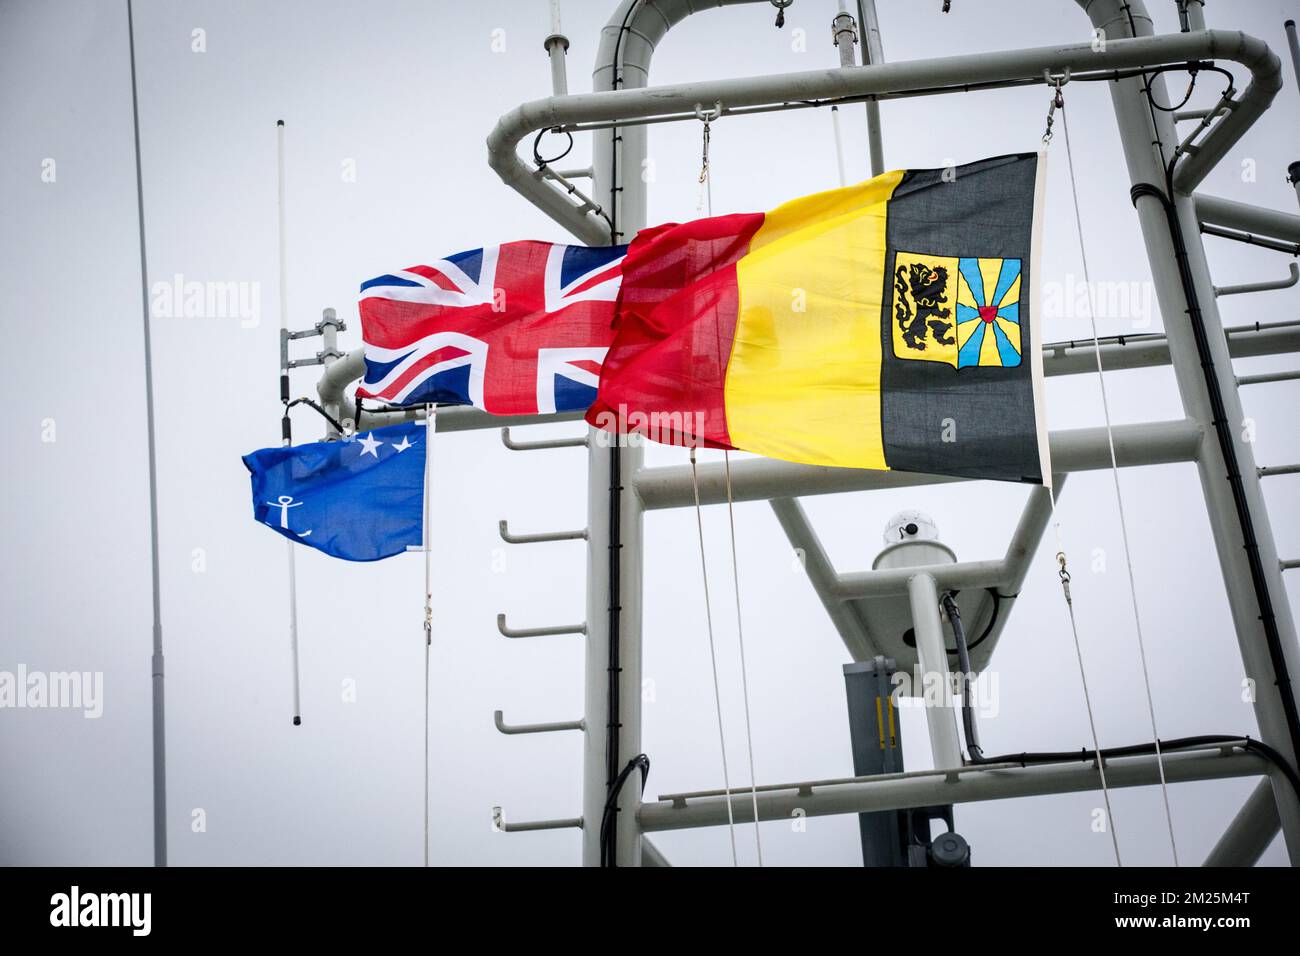 L'illustration montre les drapeaux à marge d'une cérémonie pour le 30th anniversaire de la catastrophe du Herald of Free Enterprise ferry, le lundi 06 mars 2017 à Zeebrugge. Le 6 mars 1987, le ferry a quitté le port de Zeebrugge pour Douvres avec plus de 450 passagers et 80 membres d'équipage à bord. Il a chaviré juste à l'extérieur du port. La catastrophe, causée par l'échec de la fermeture des portes de l'arc, a coûté la vie à 194 personnes. BELGA PHOTO KURT DESPLENTER Banque D'Images